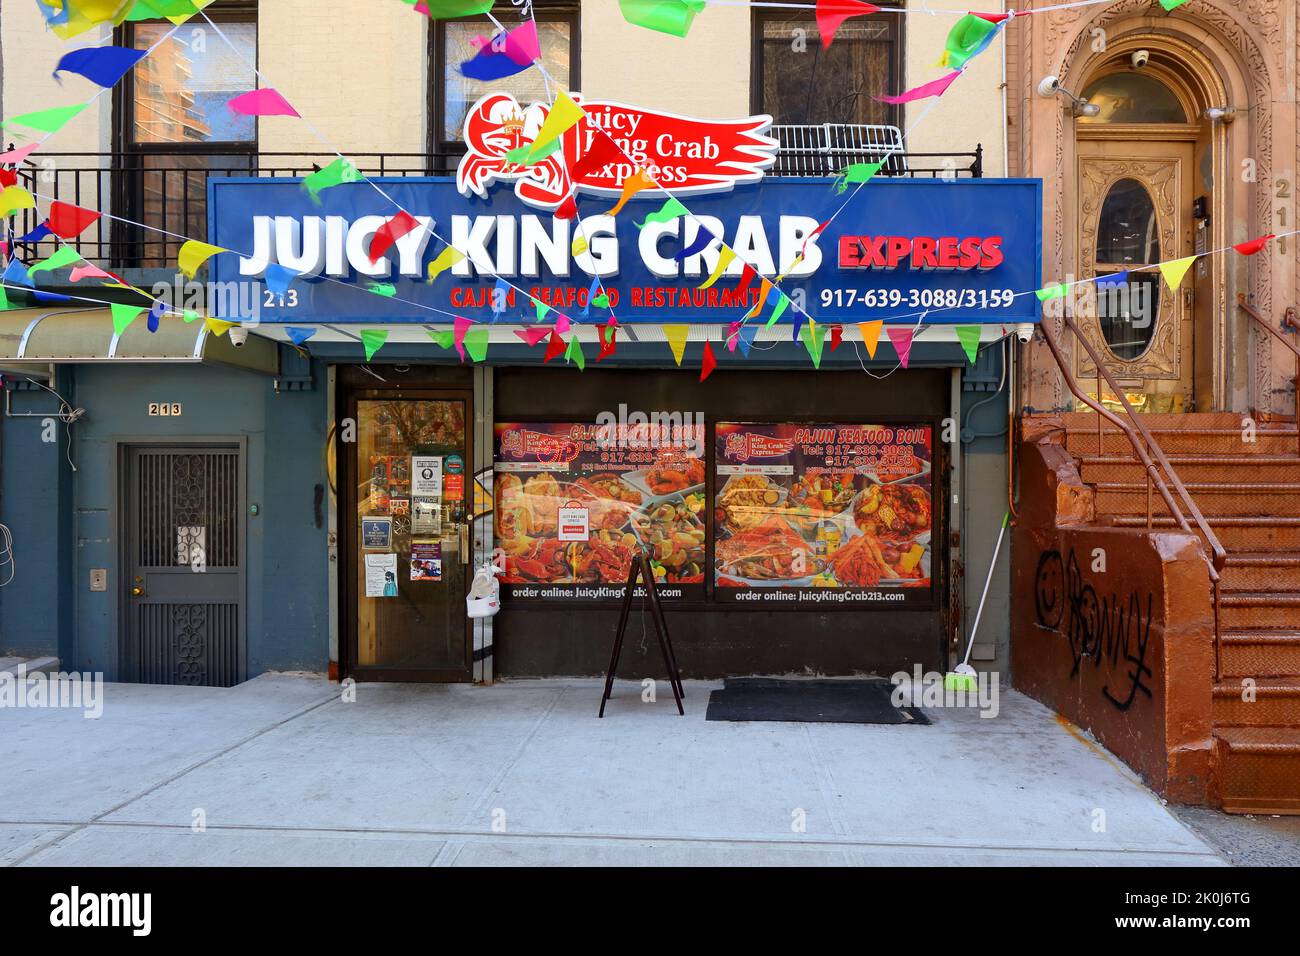 [Historical Storefront] Juicy King Crab Express, 213 E Broadway, New York. storefront eines Fischrestaurants im stil der kajun in der Lower East Side. Stockfoto